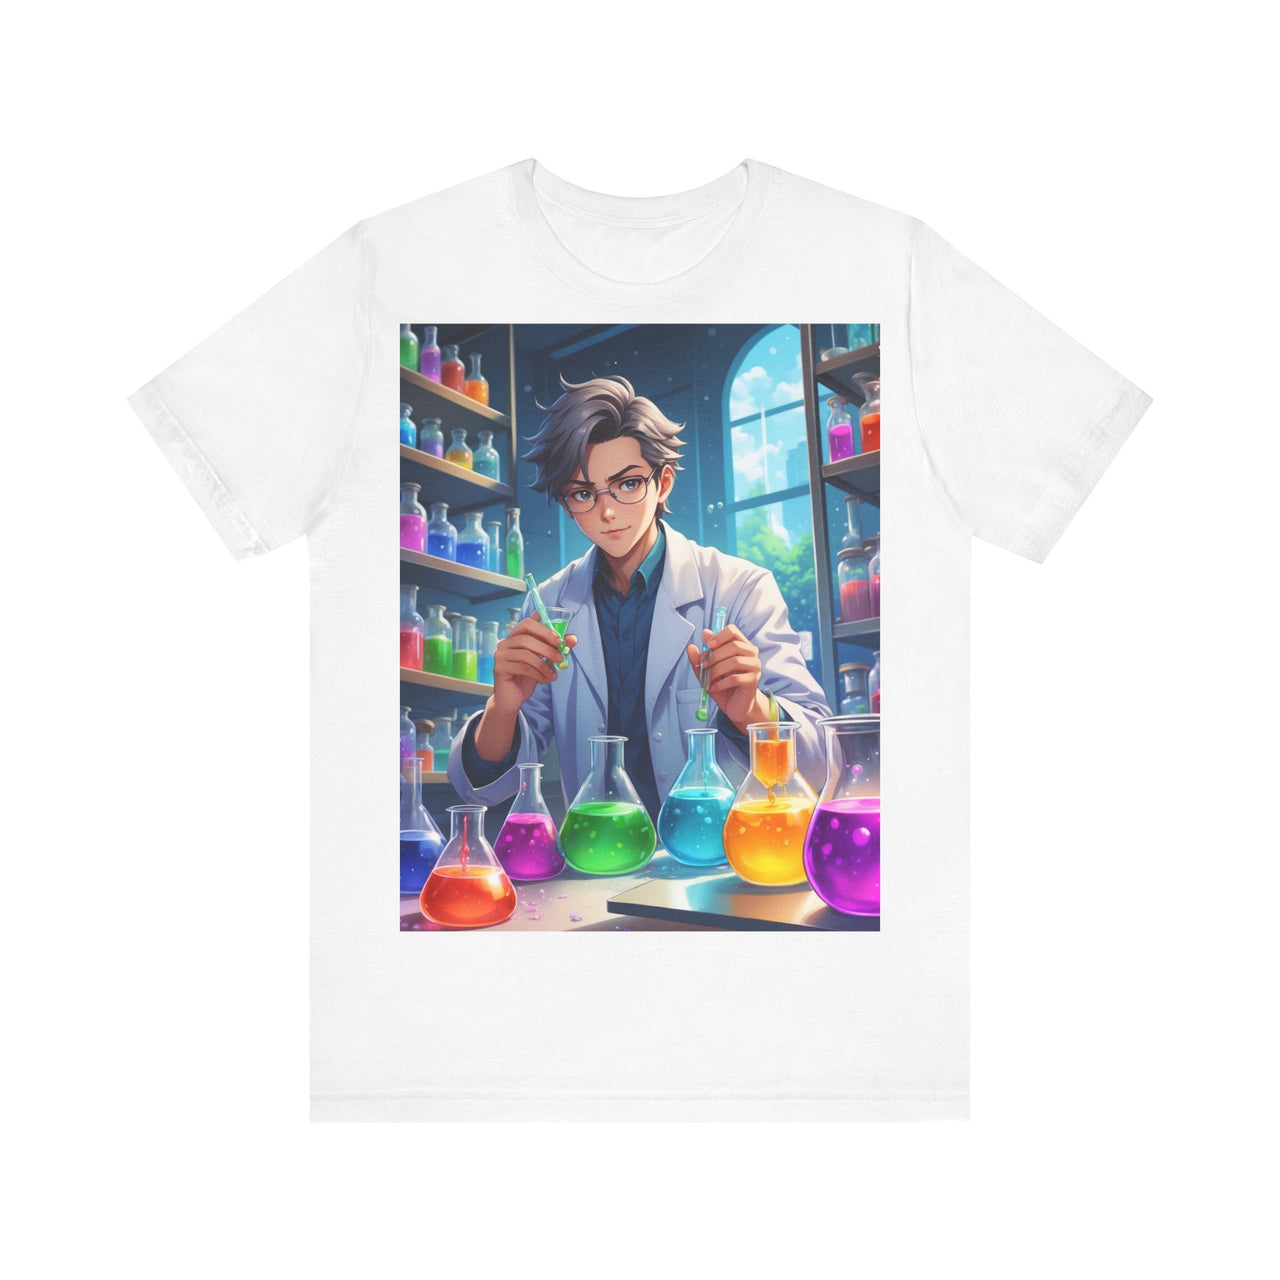 Camiseta Unisex de química, Camiseta "No sé si estos eran los componentes", camiseta de humor químico